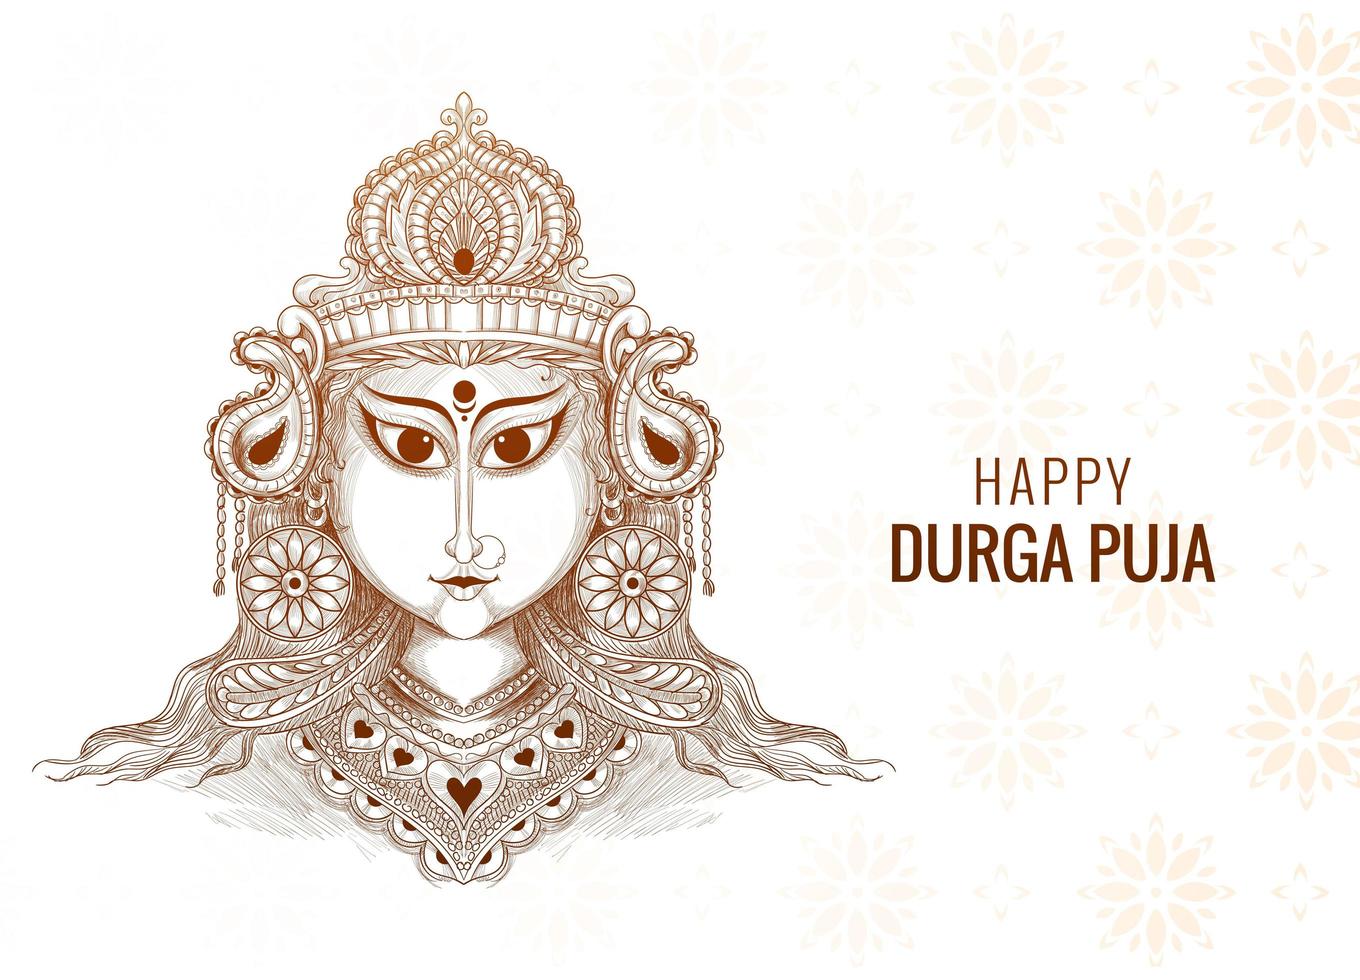 Happy durga puja decorative sketch  design vector